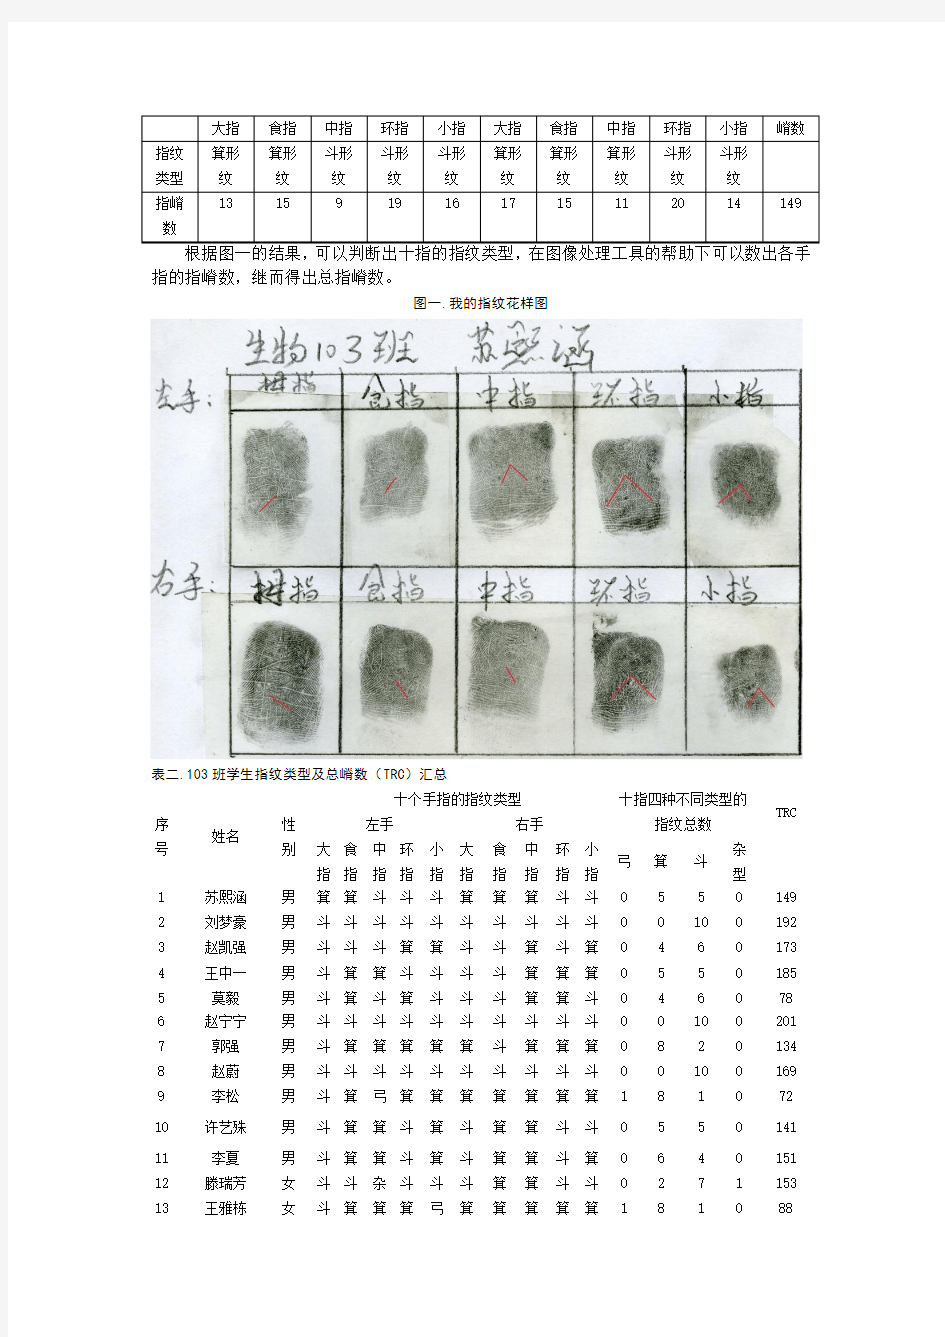 生物103班-苏熙涵-1002040313-人类指纹花样的遗传分析实验报告